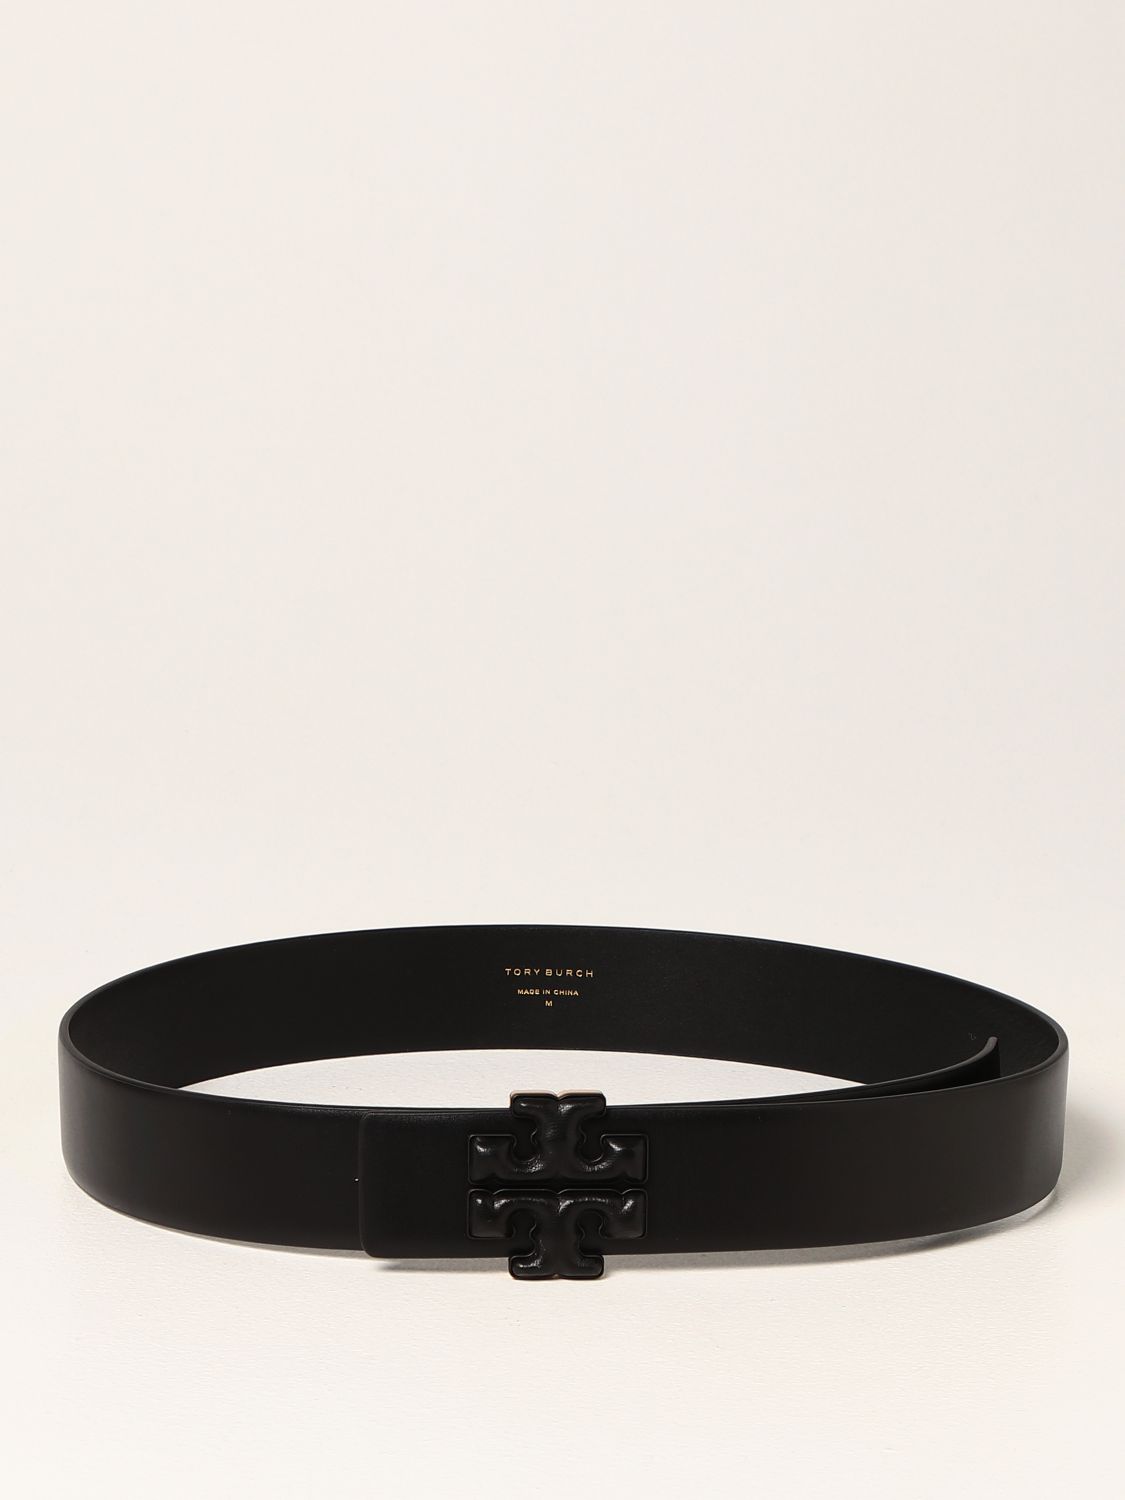 TORY BURCH: Eleanor leather belt - Black | Tory Burch belt 78424 online on  